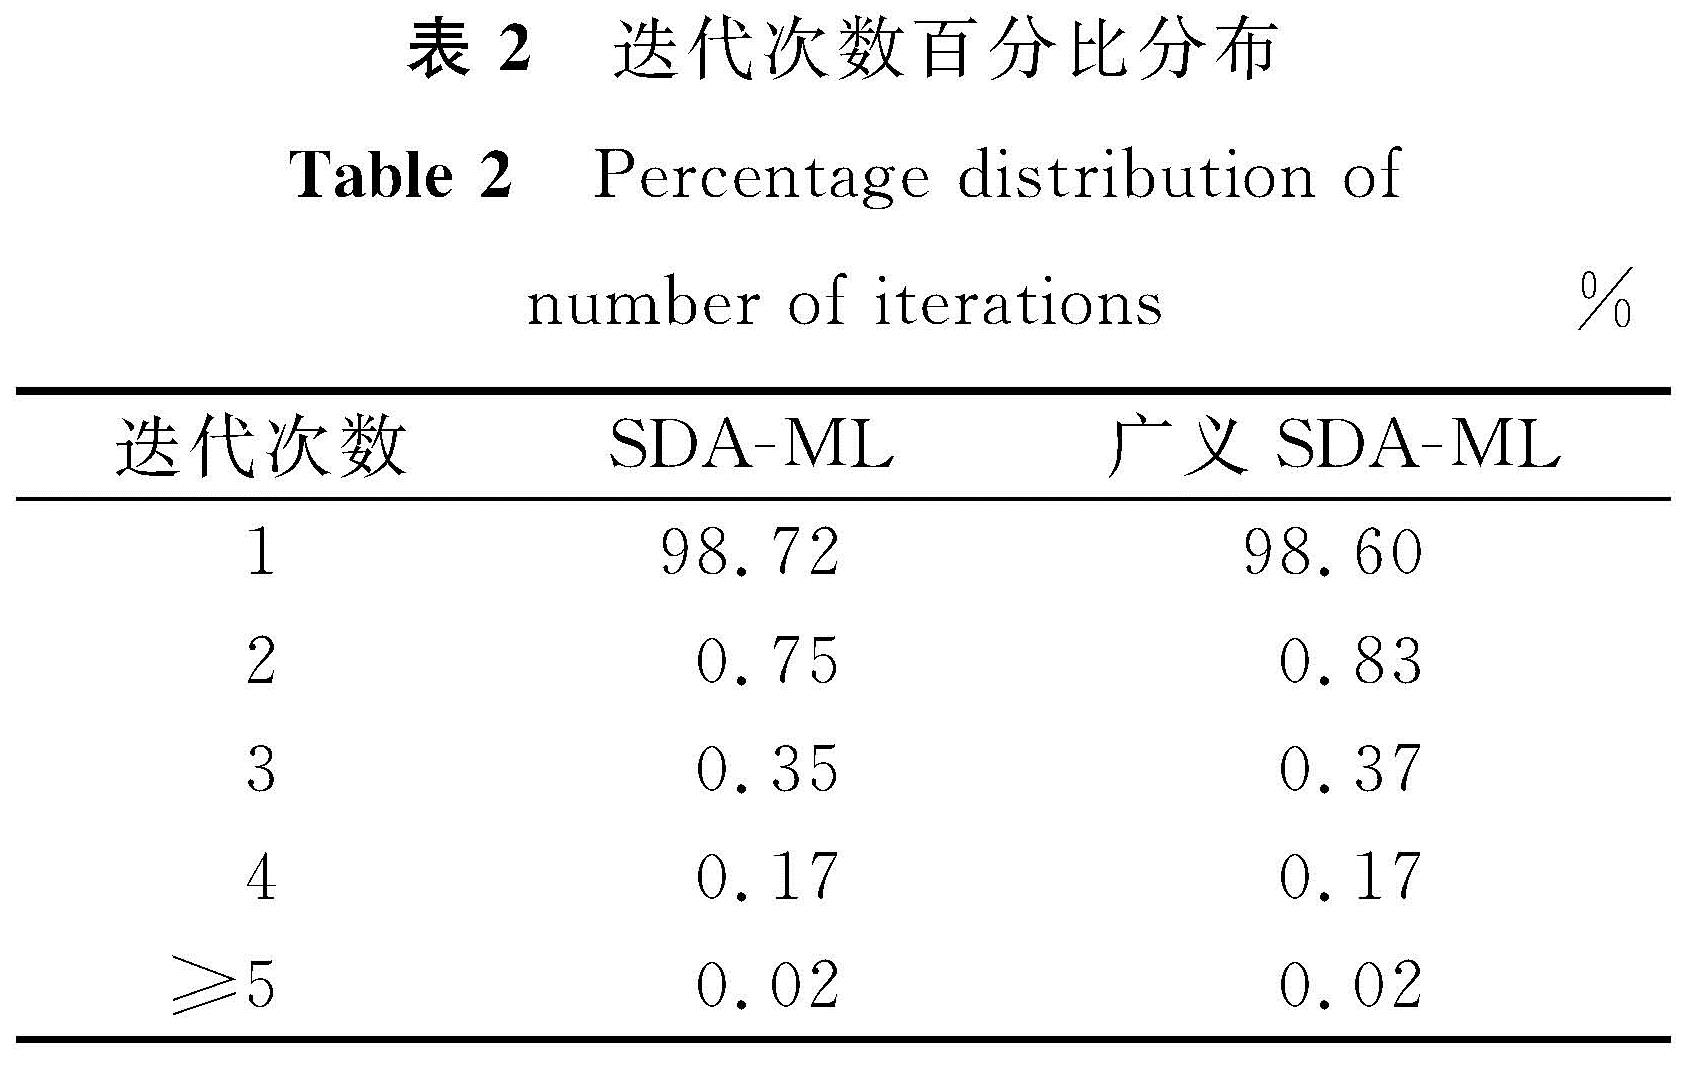 表2 迭代次数百分比分布<br/>Table 2 Percentage distribution of number of iterations%